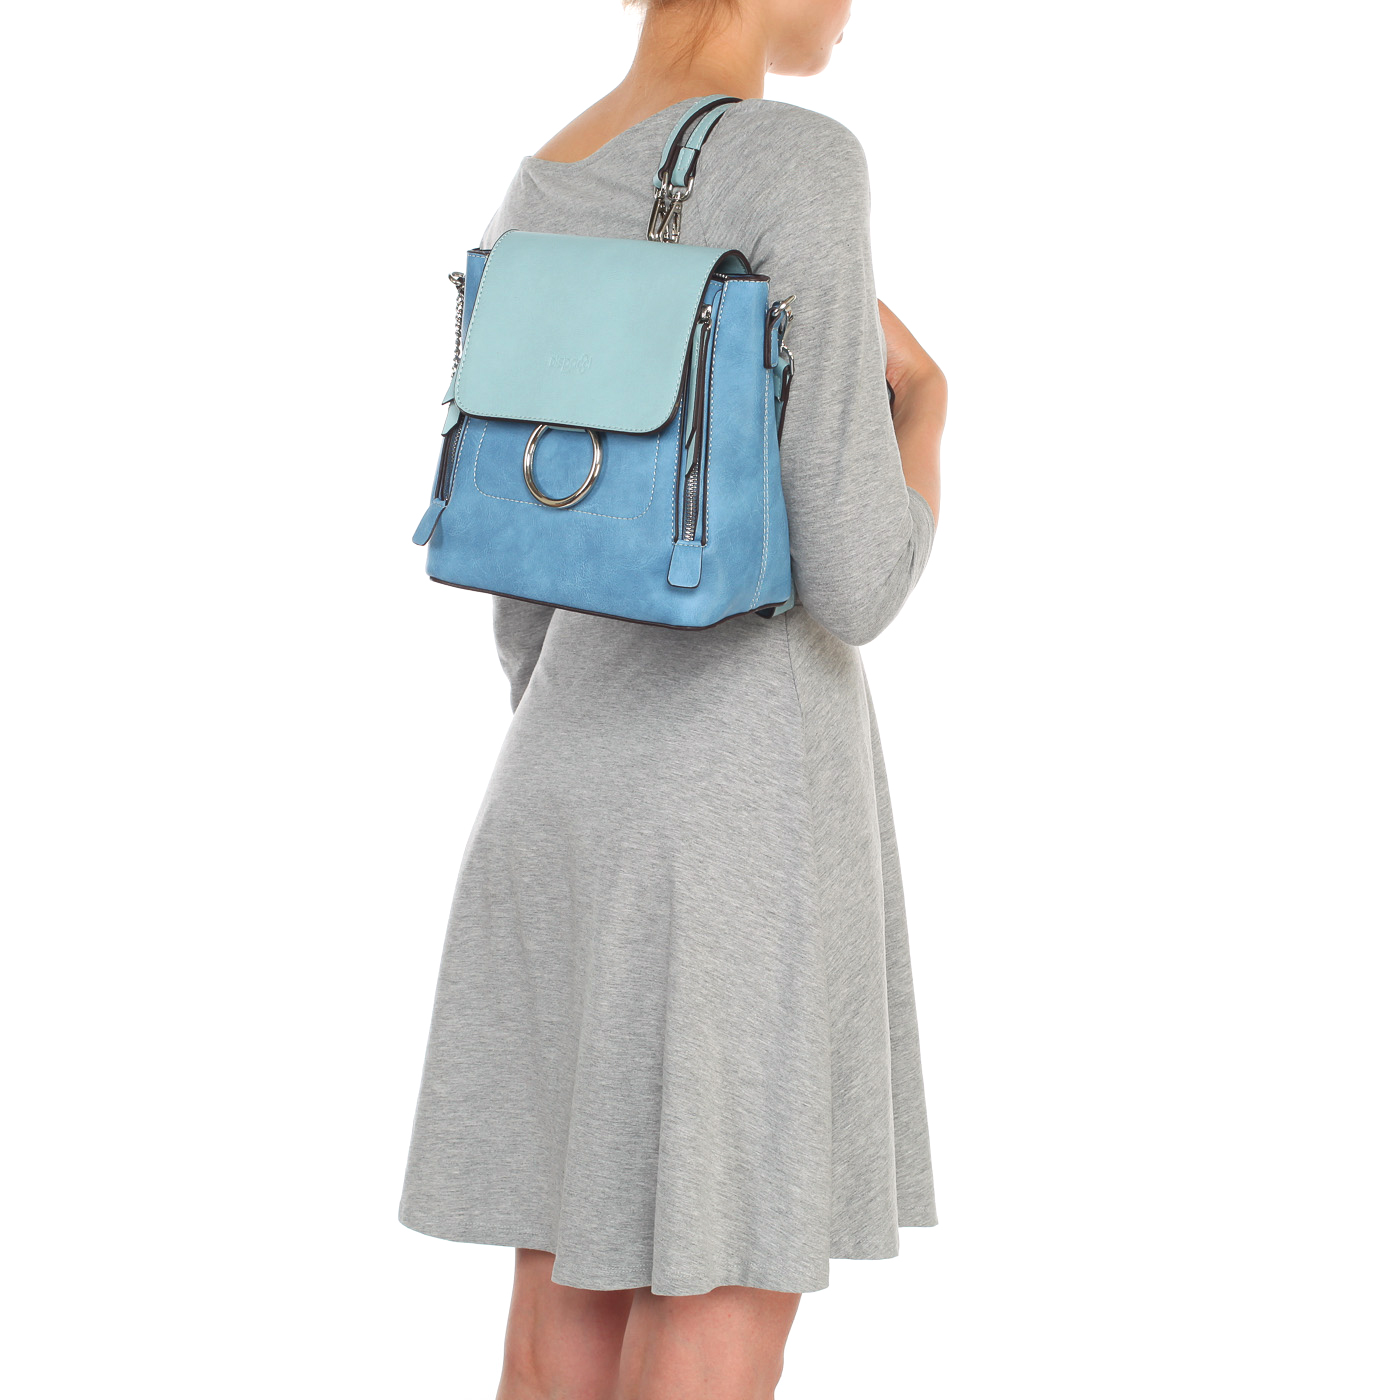 Практичная женская сумка-рюкзак из экокожи синего цвета Dispacci 